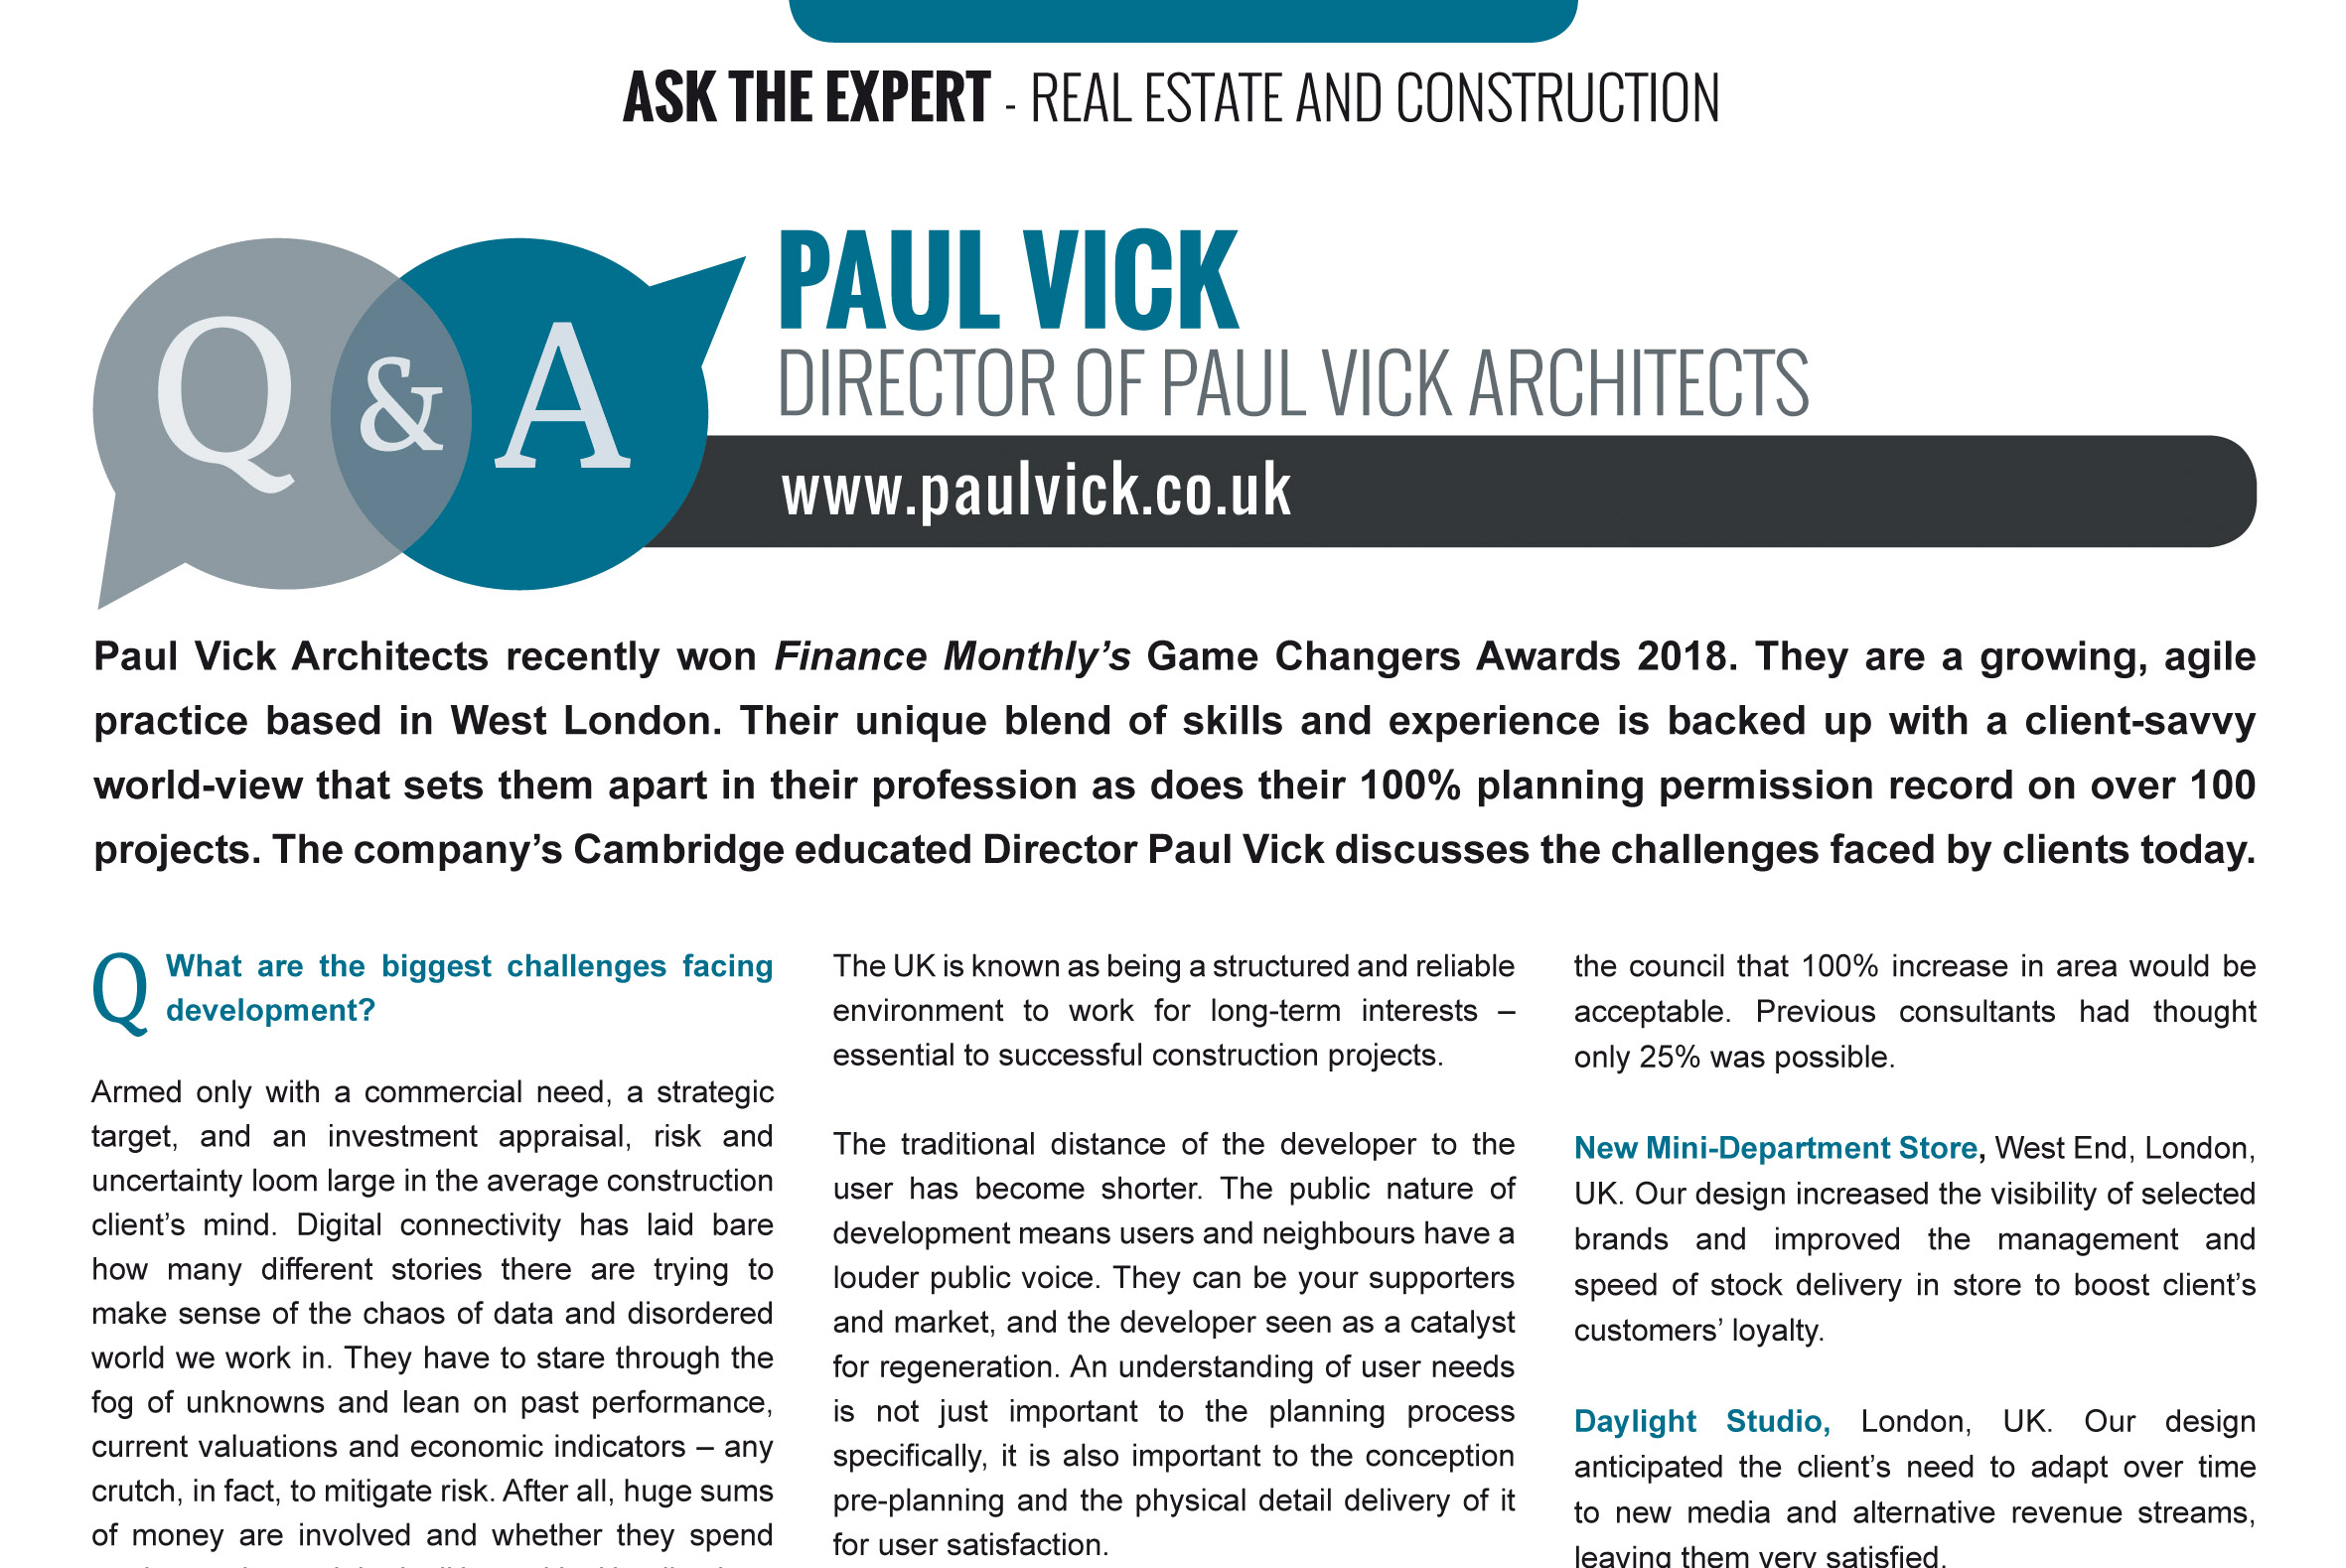 Paul Vick Architects